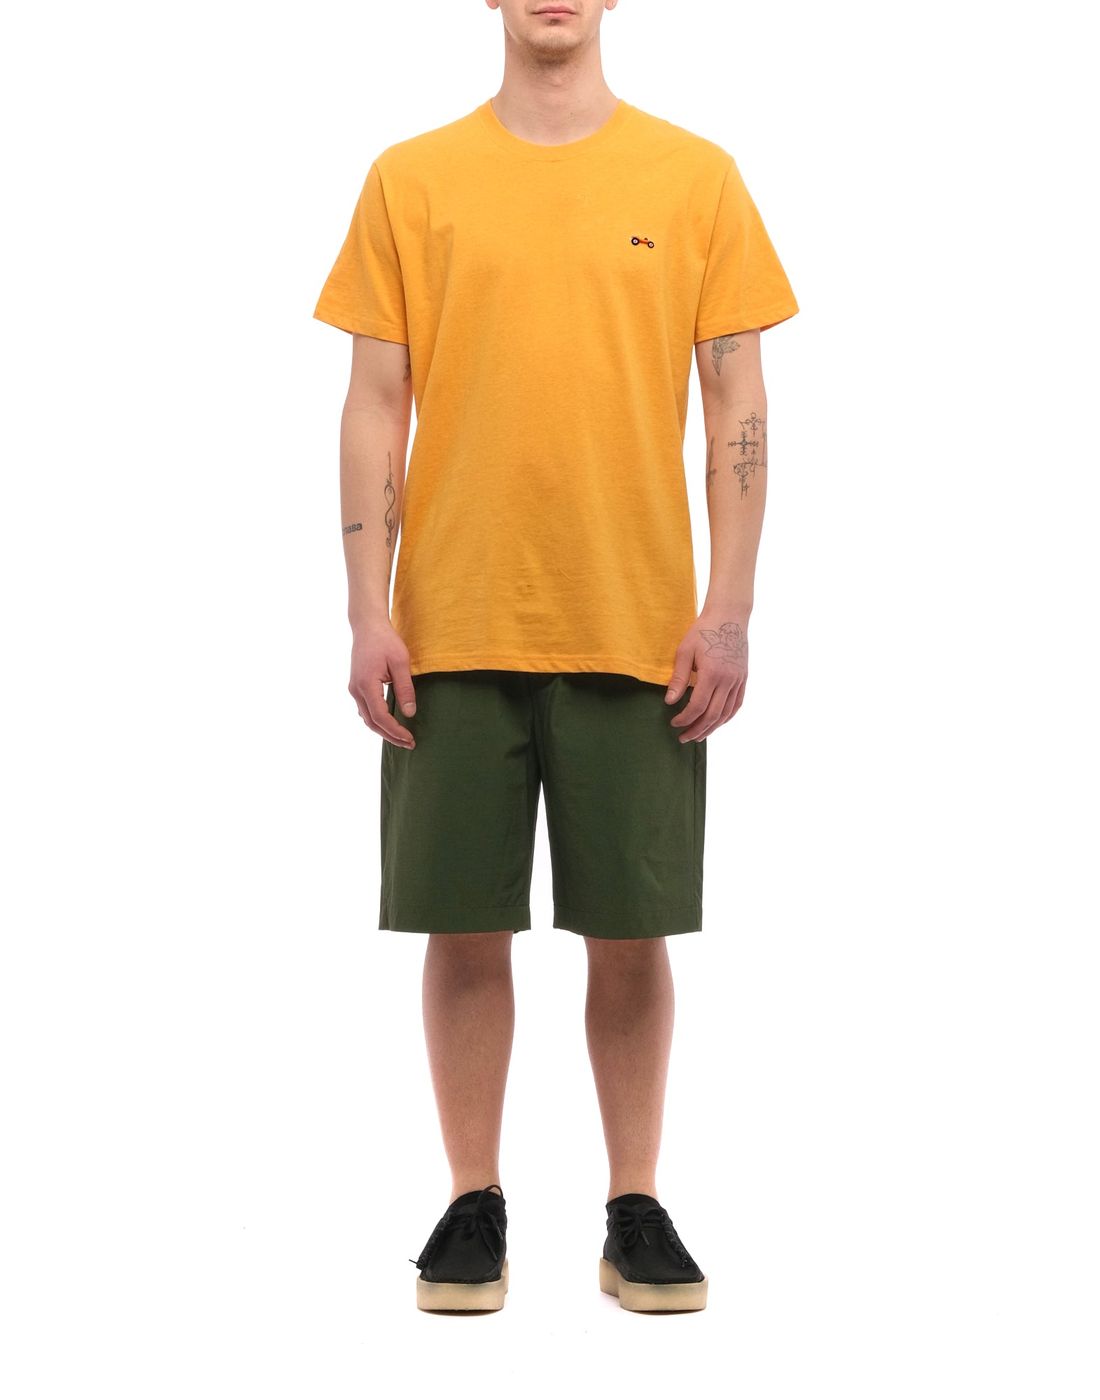 T-shirt pour l'homme 1262 Mel orange clair REVOLUTION